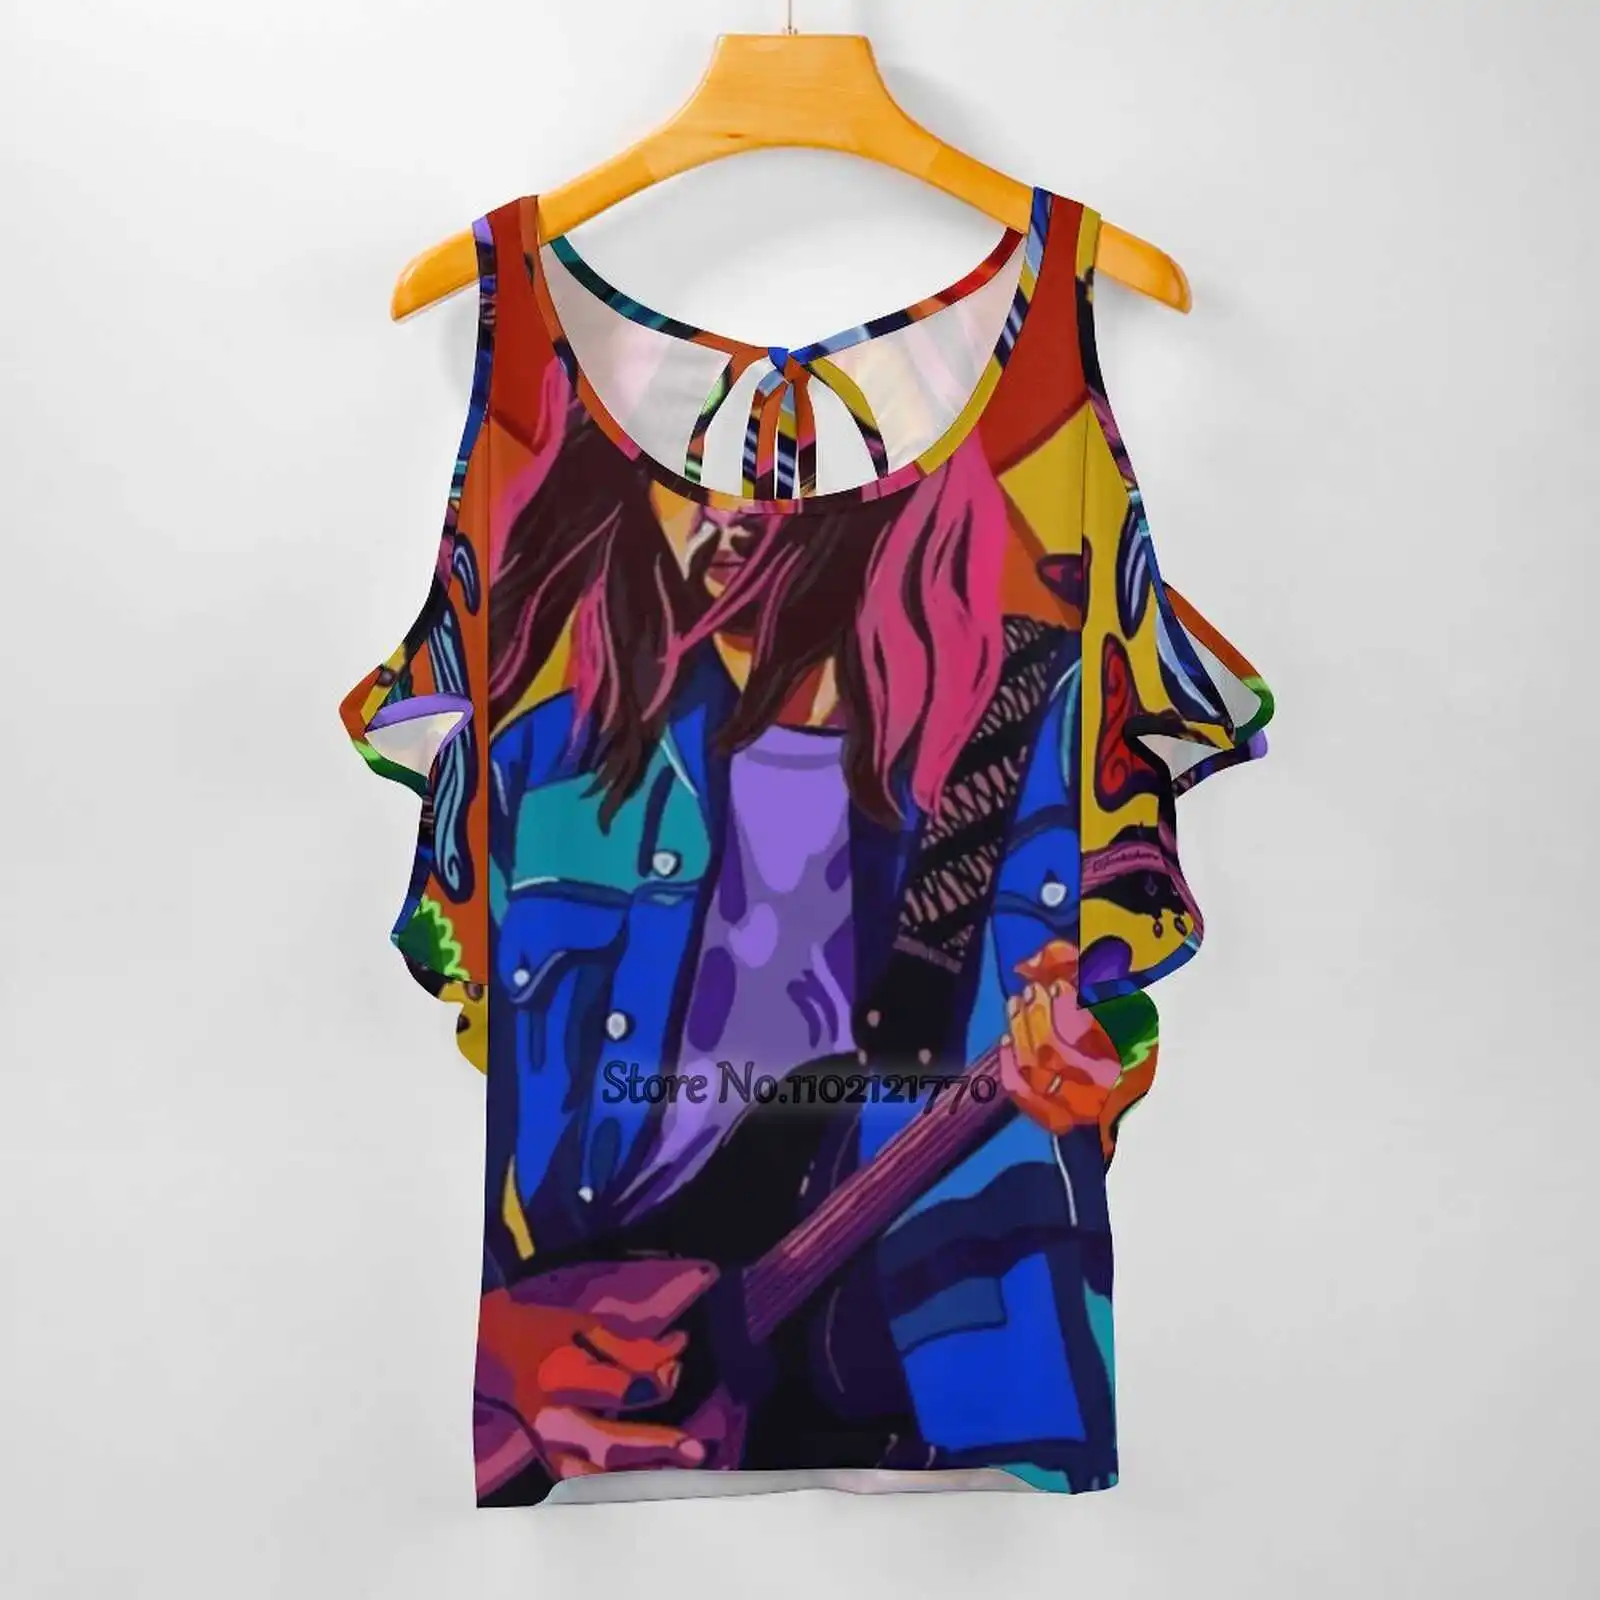 

Женская футболка Кевина Импала на завязках сзади, сексуальные футболки, пуловер с вырезами, топ, музыка, рэп, мечты, ручная работа, крутая цит...